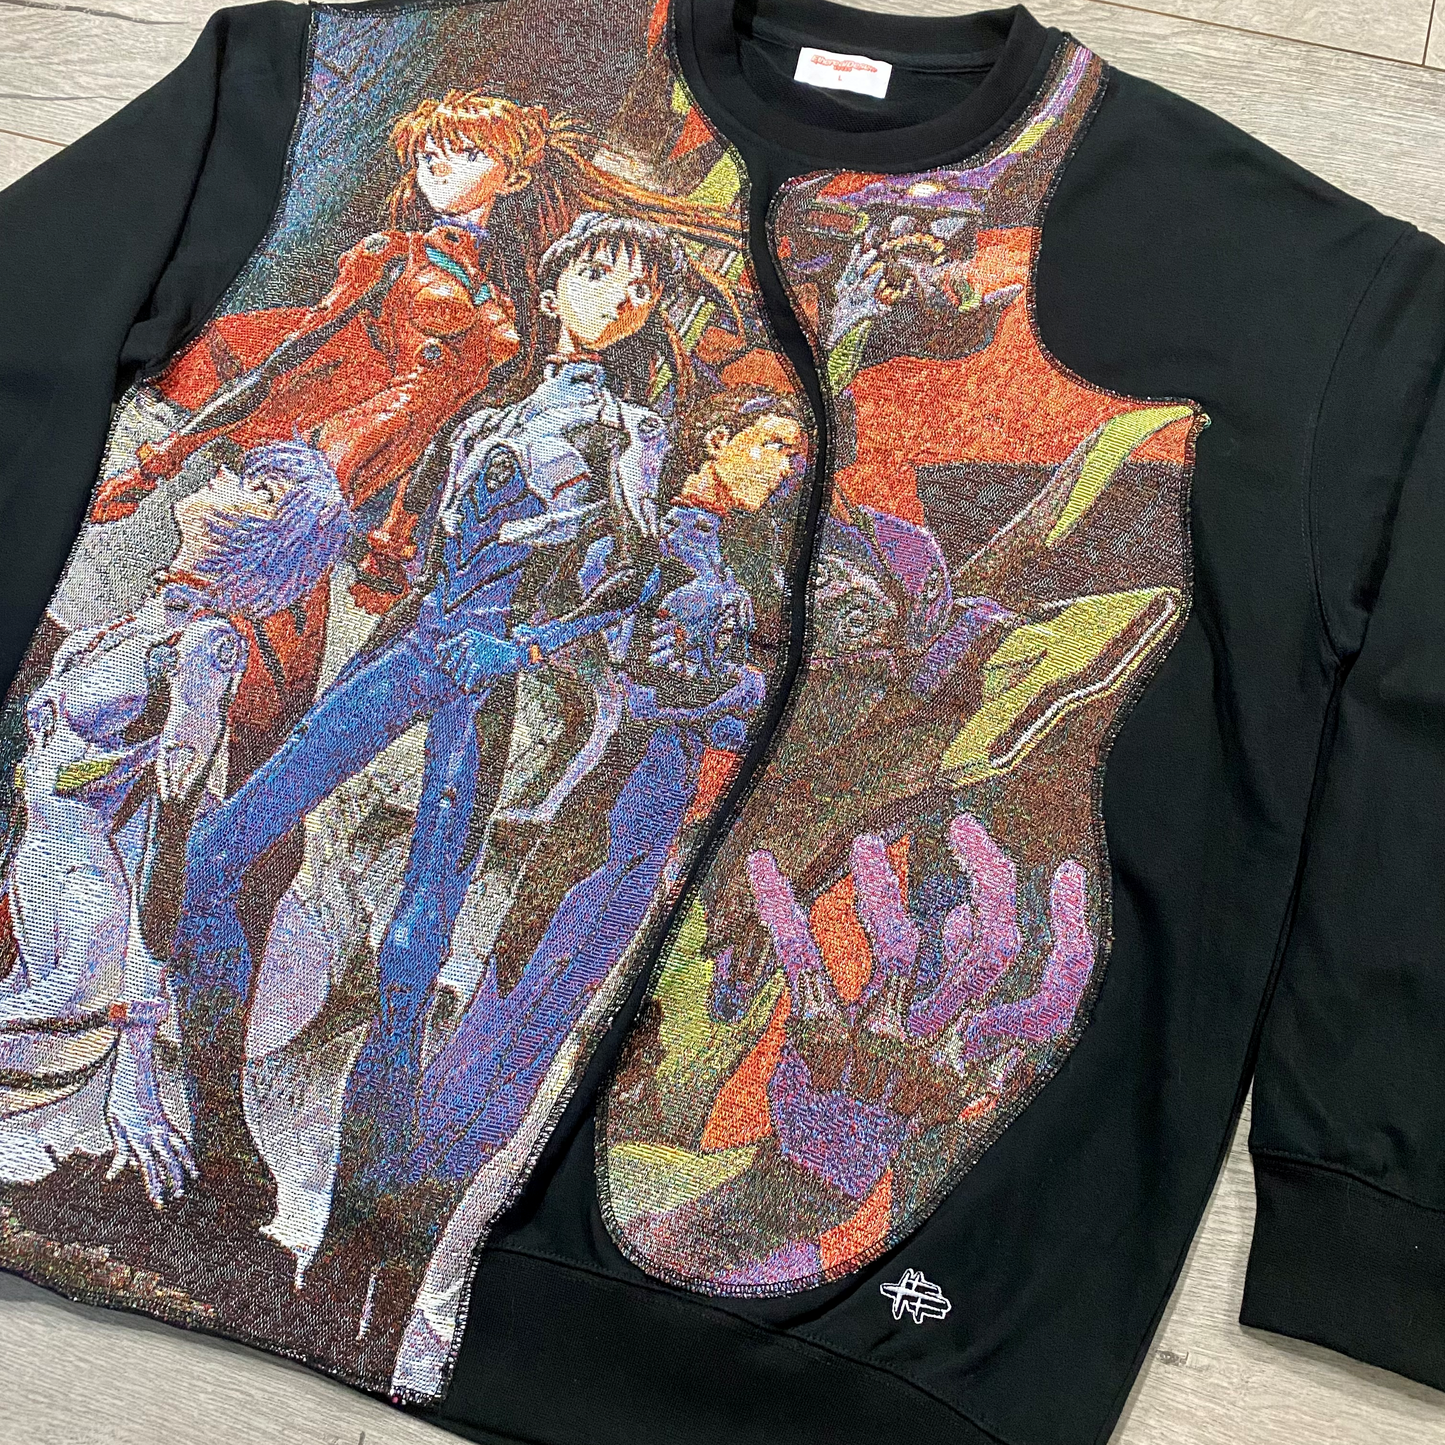 『Evangelion』 "Stance" Tapestry Sweatshirt